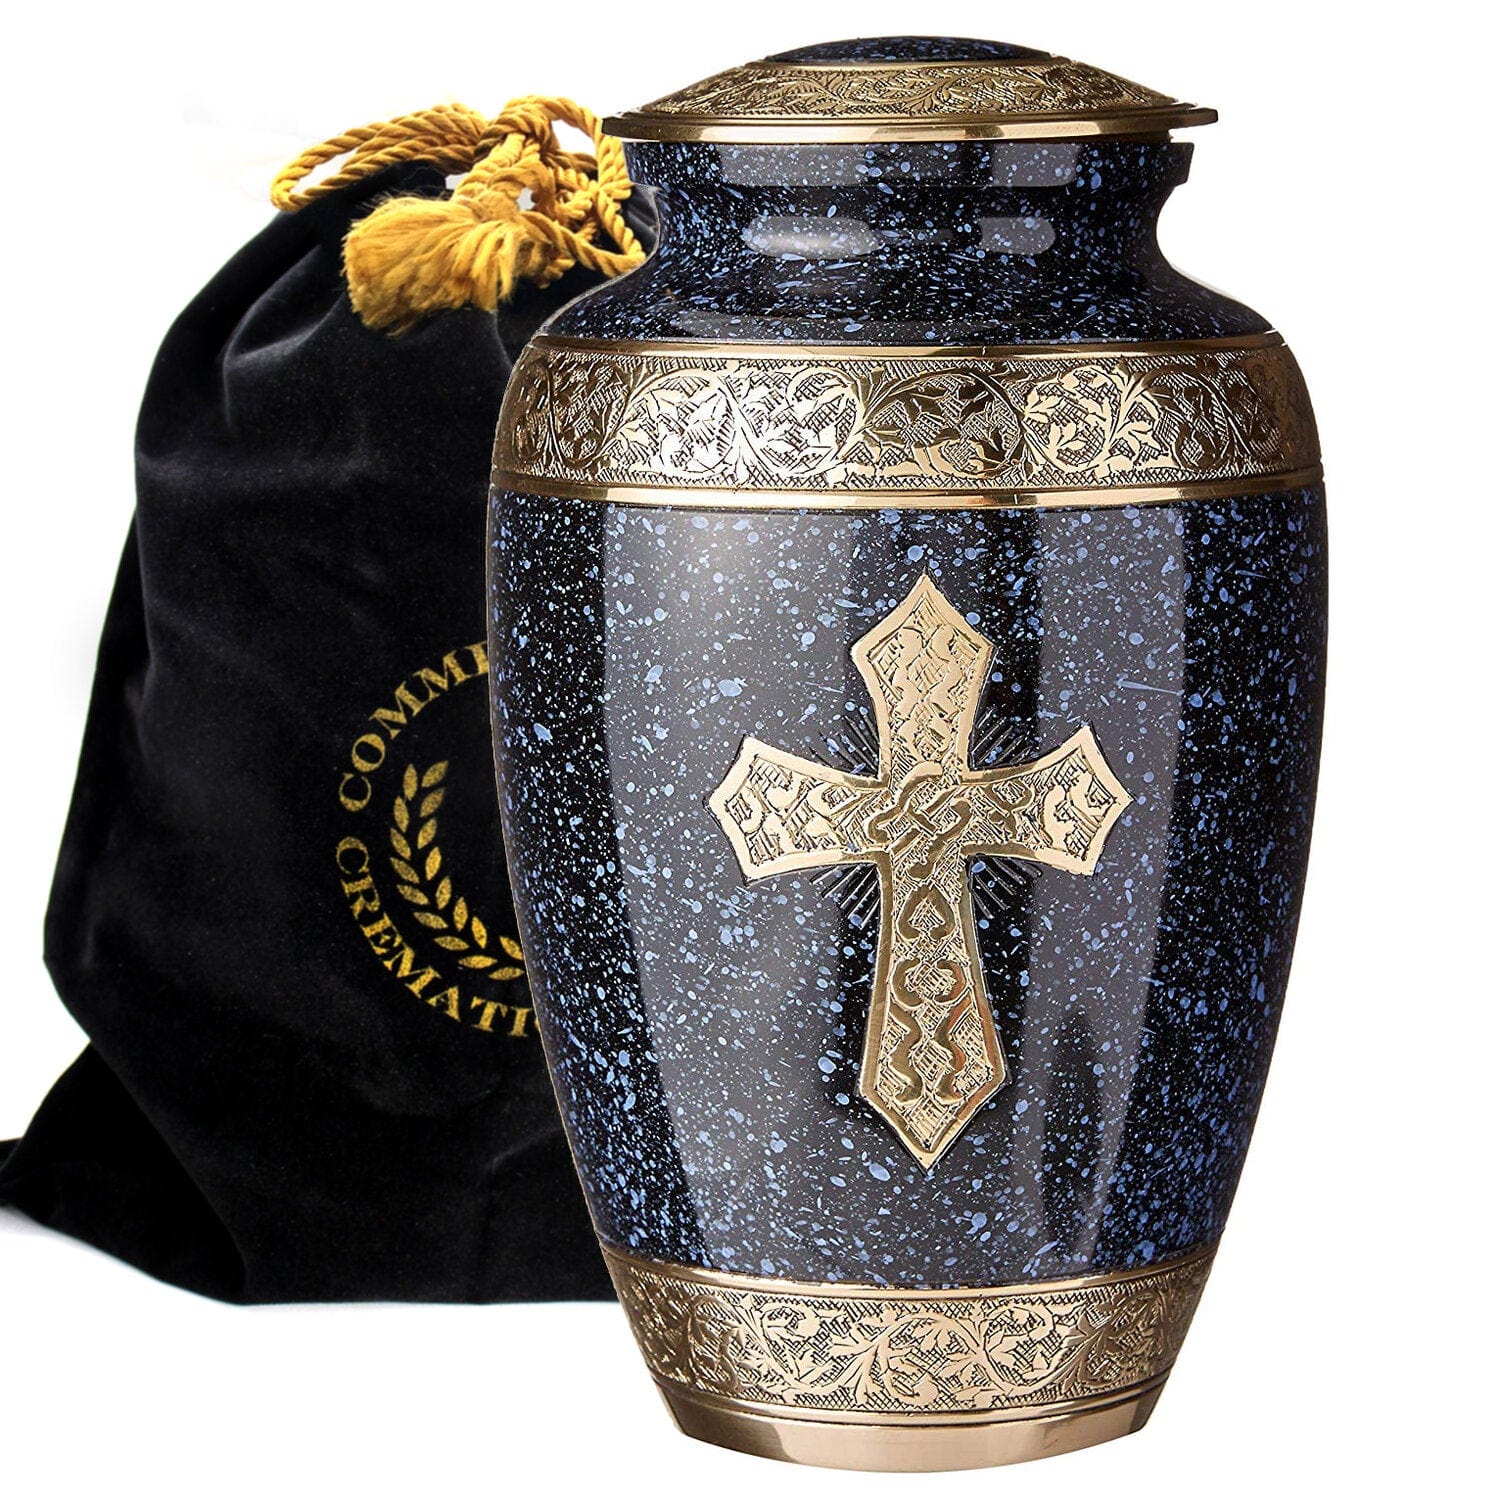 Commemorative Cremation Urns Large Love of Christ Black Cremation Urn